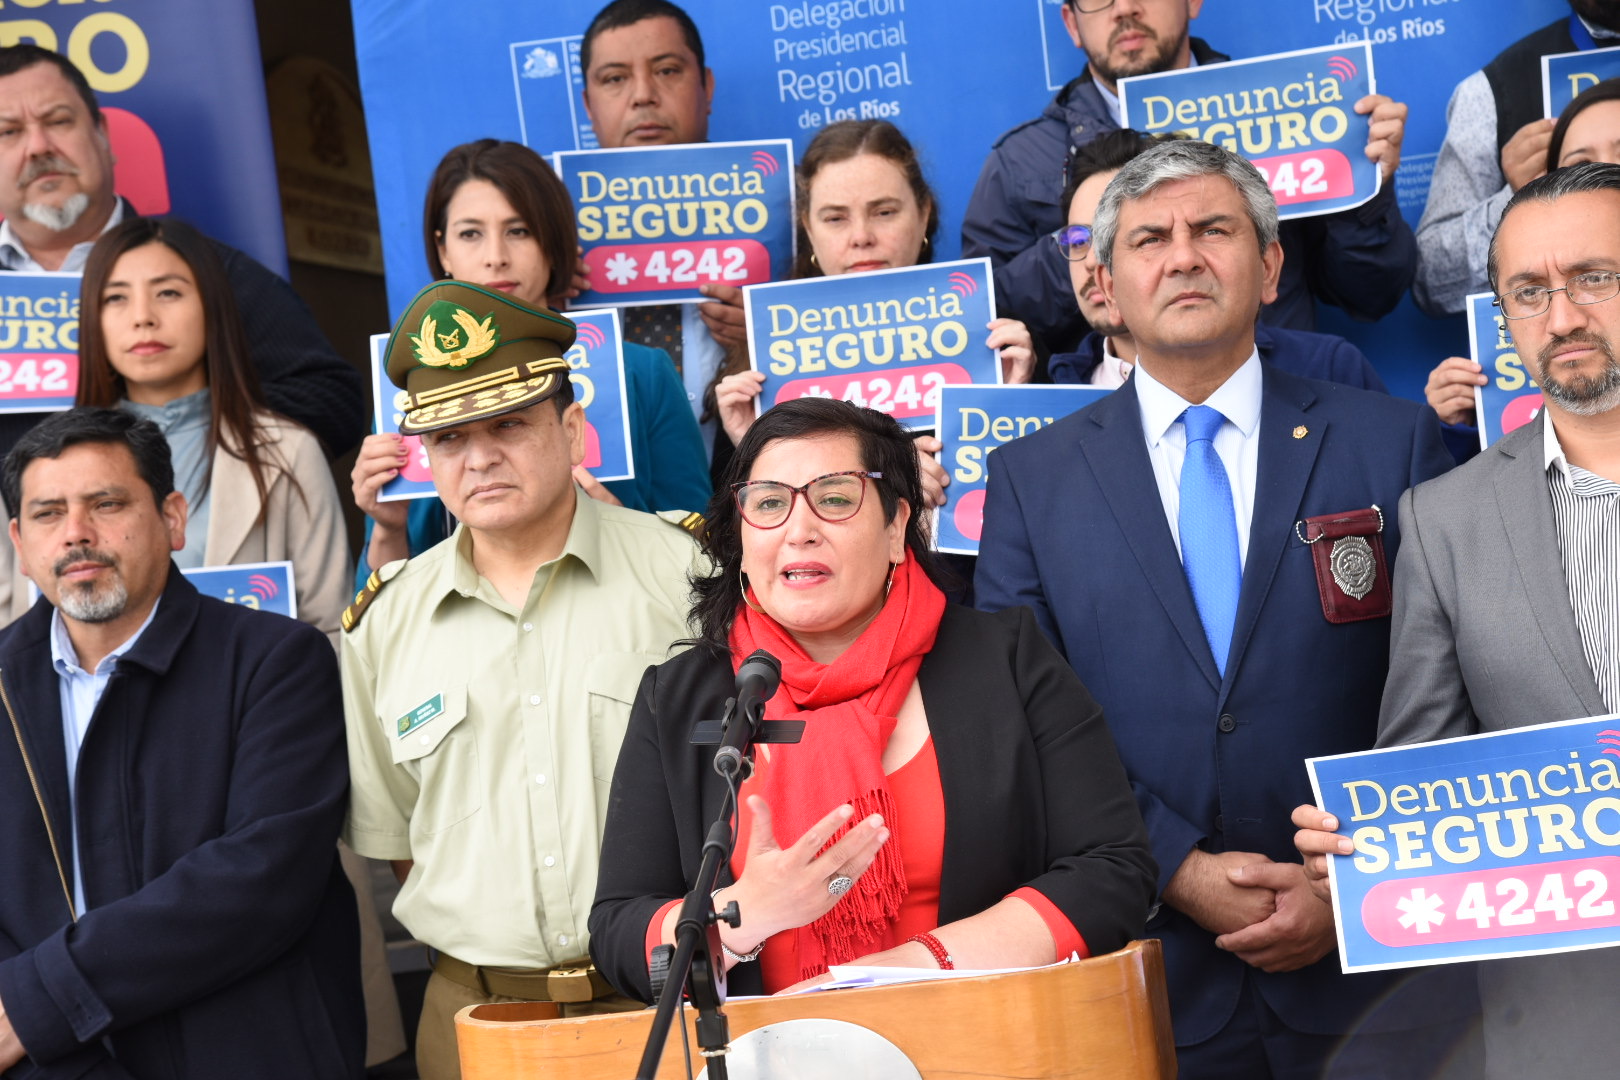 Delegada Carla Peña Ríos y Coordinador de Seguridad pública lanzan nuevo número del Programa Denuncia Seguro: Se debe llamar al *4242, es gratuito y 24/7